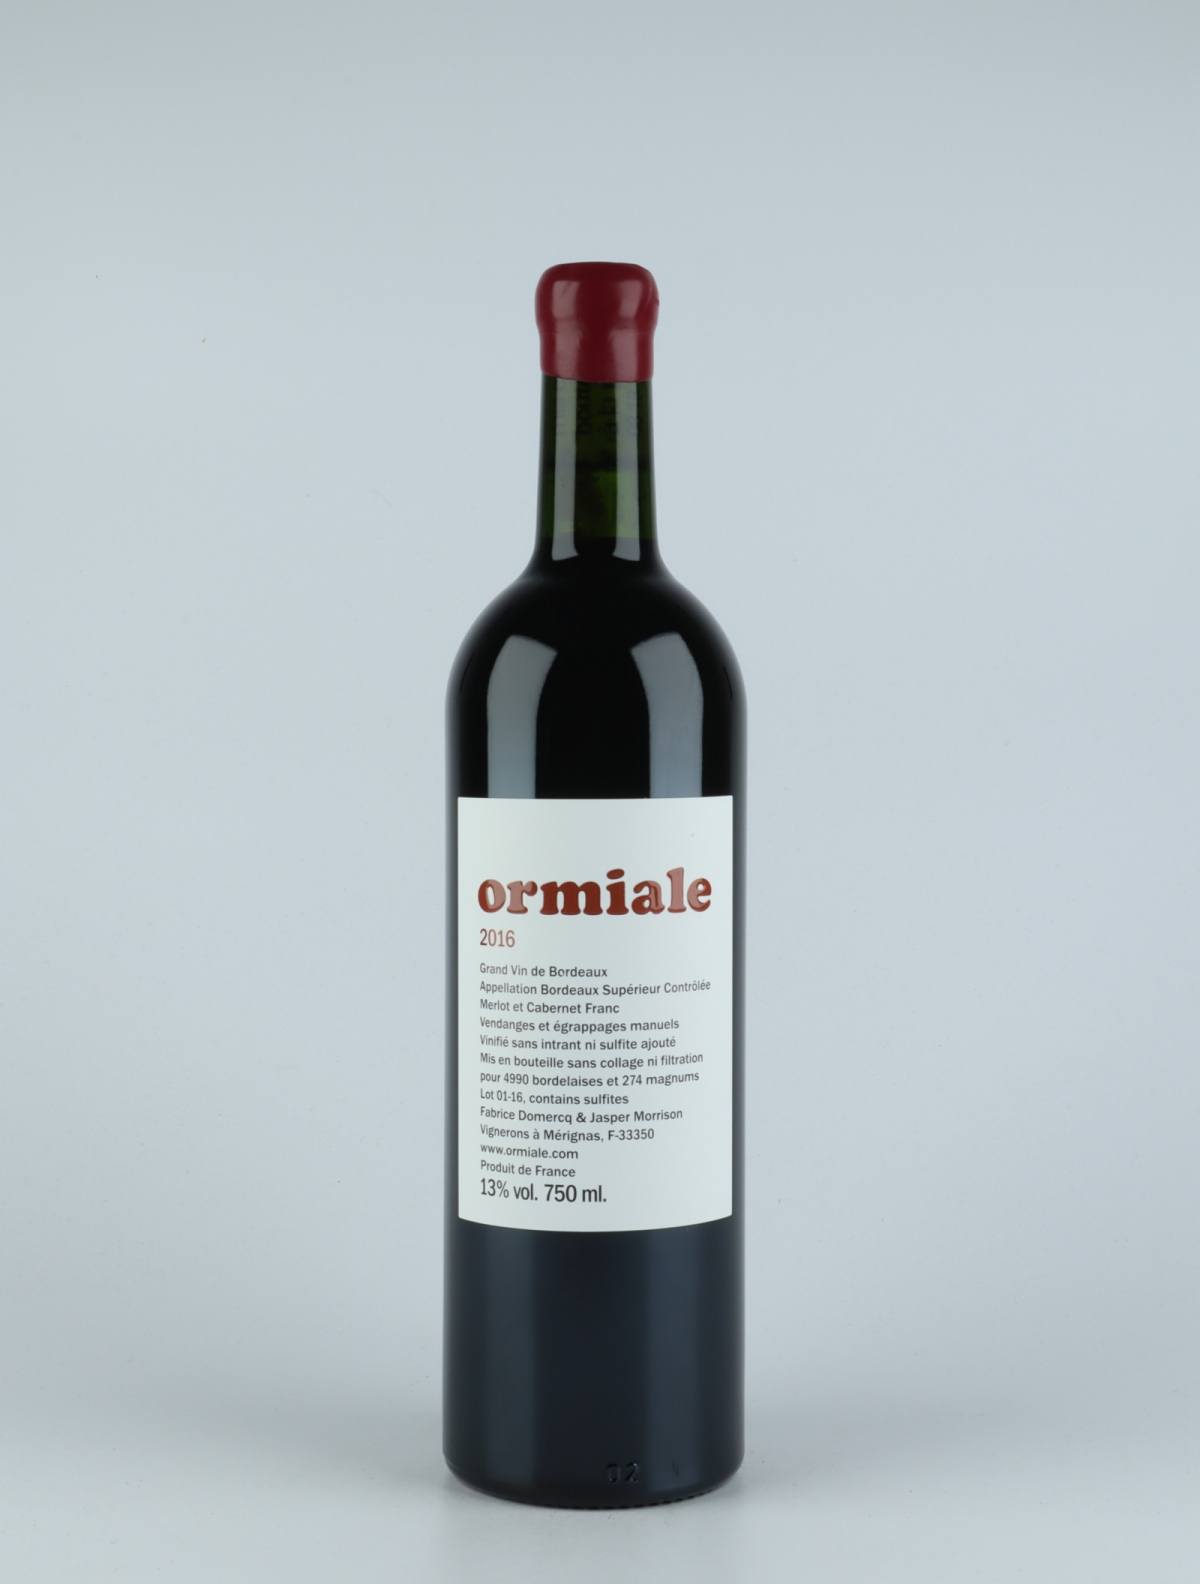 En flaske 2016 Ormiale Rødvin fra Ormiale, Bordeaux i Frankrig